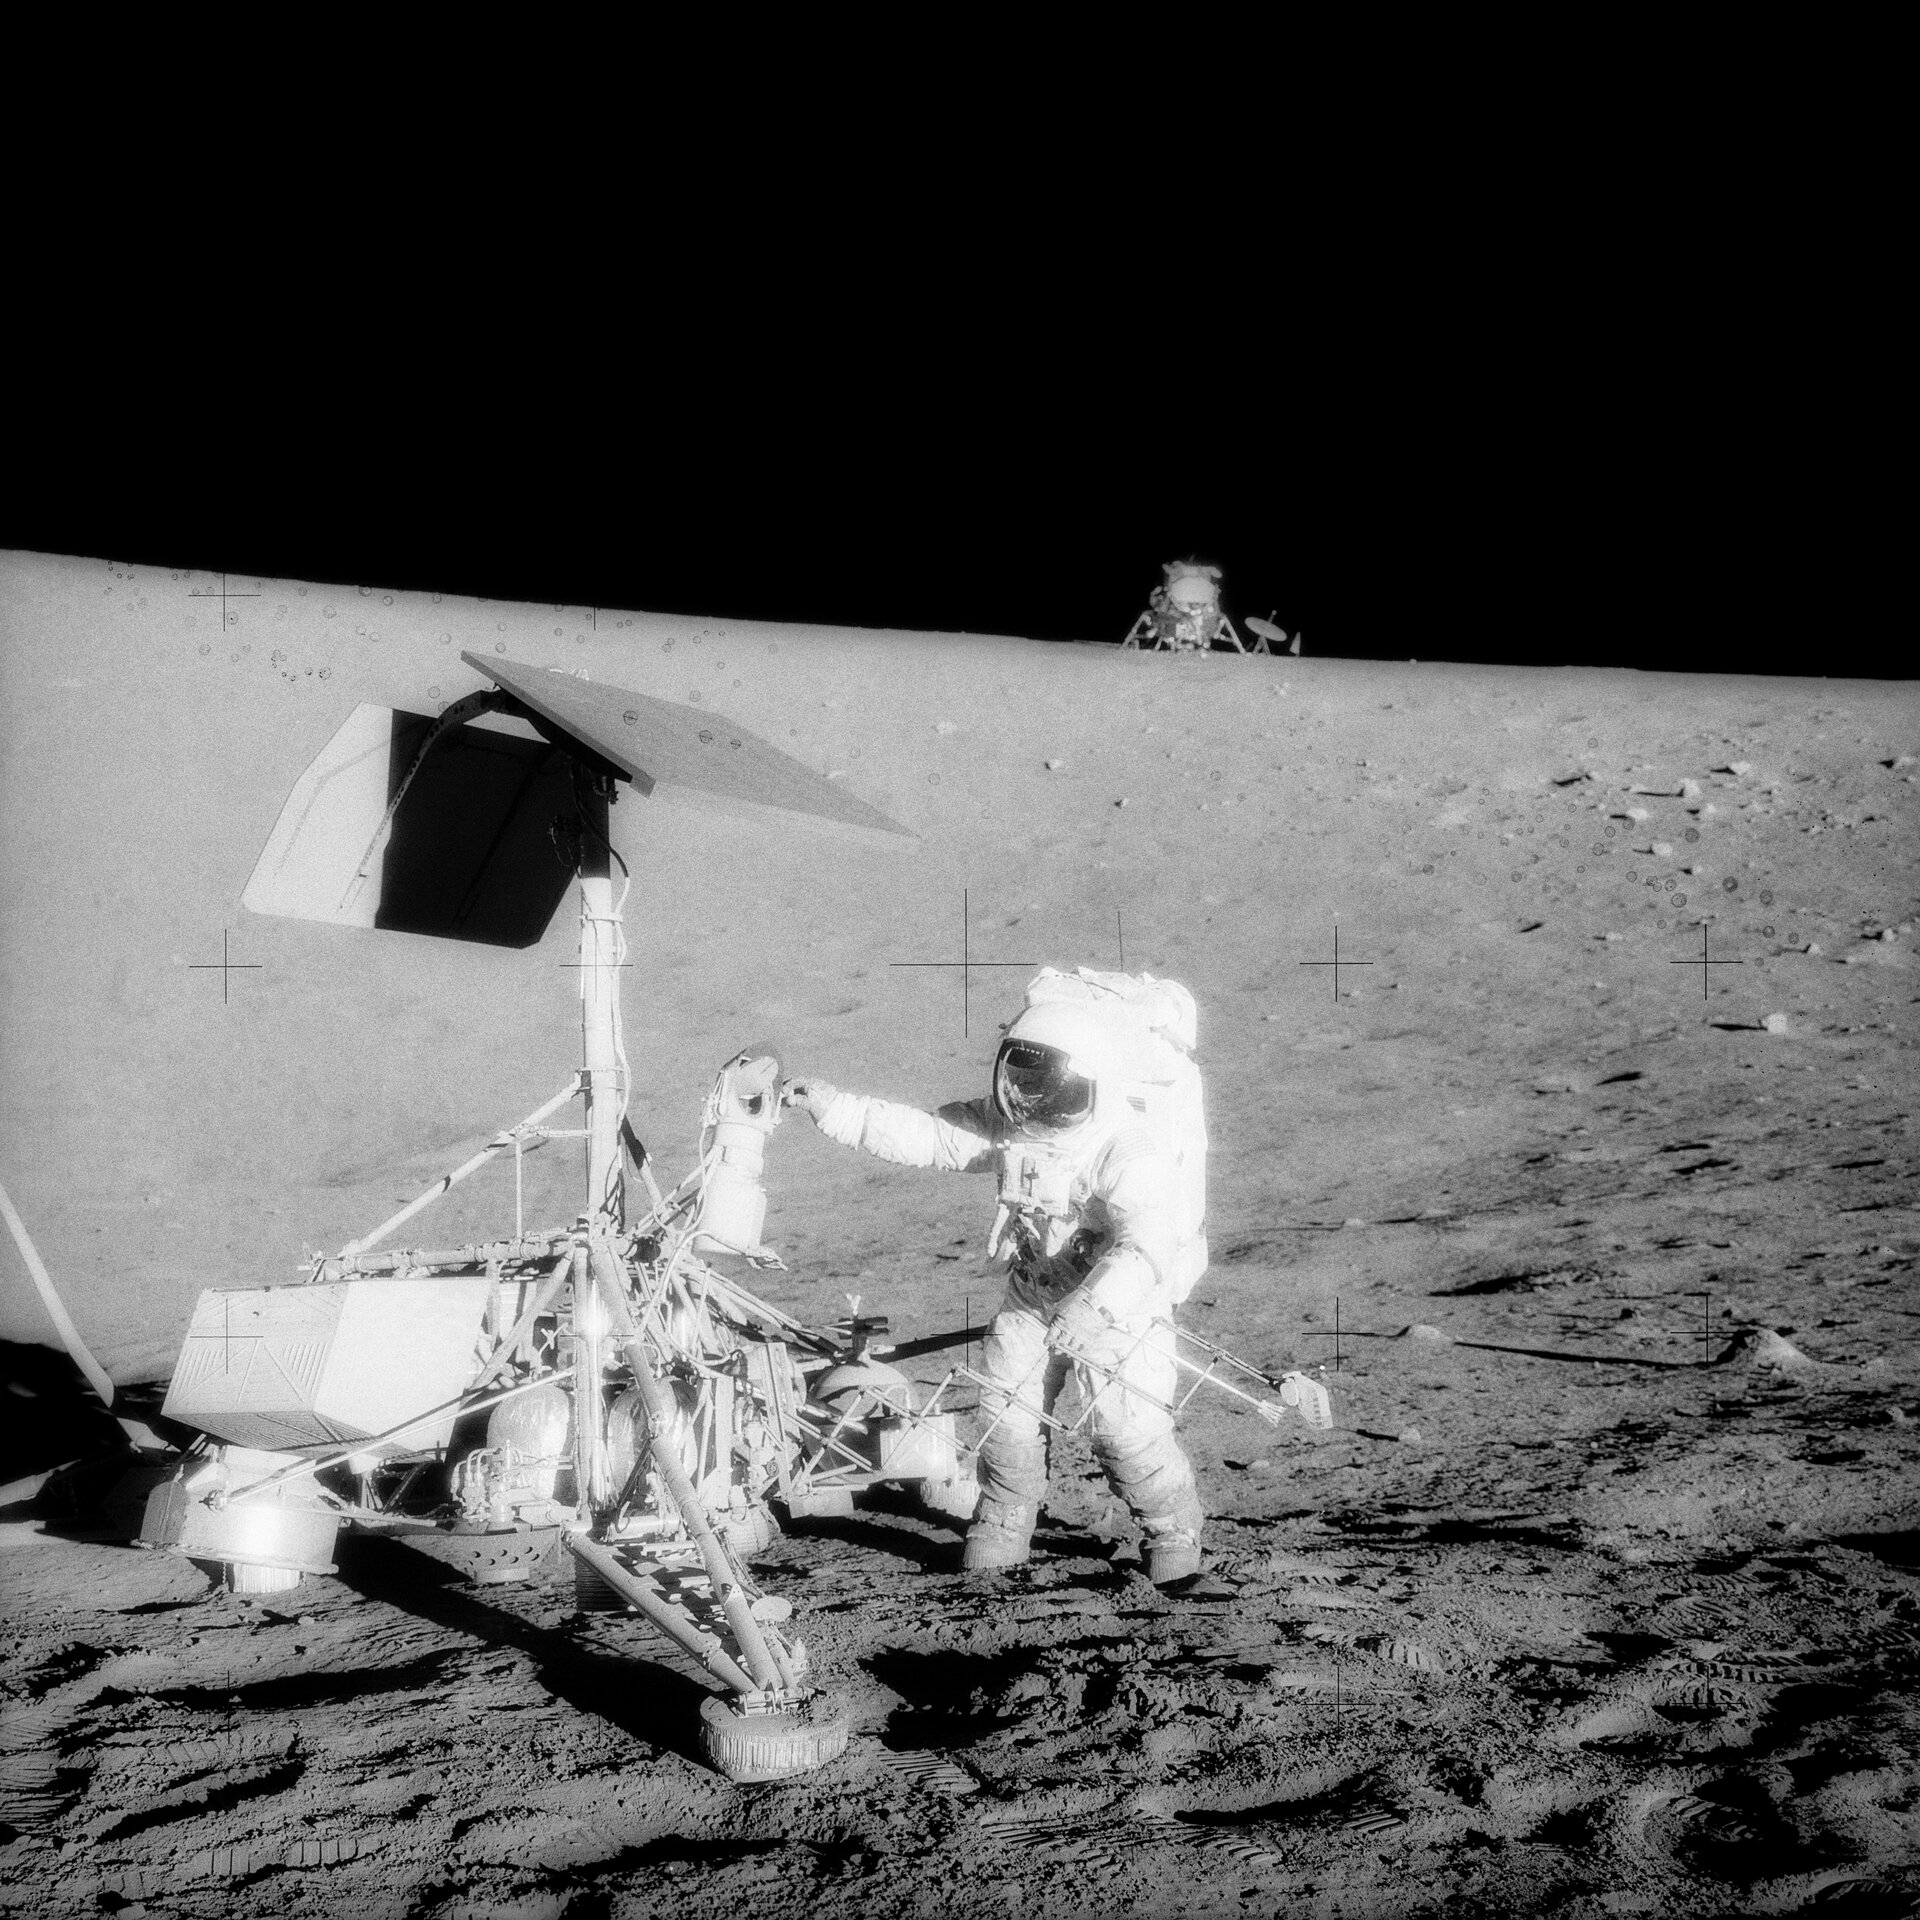 Apollo 12 astronaut on the Moon